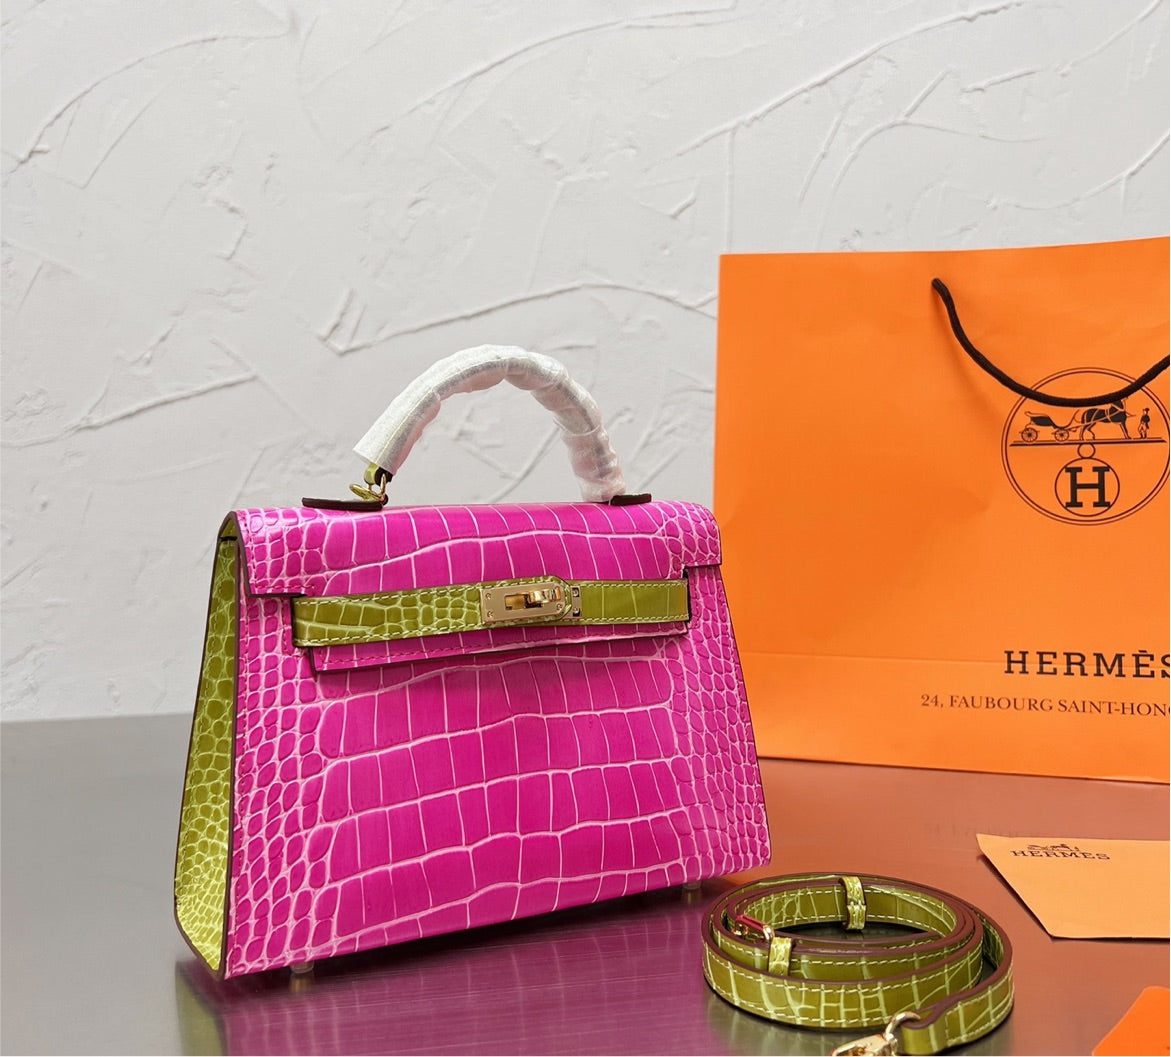 New Hermes woman handbag